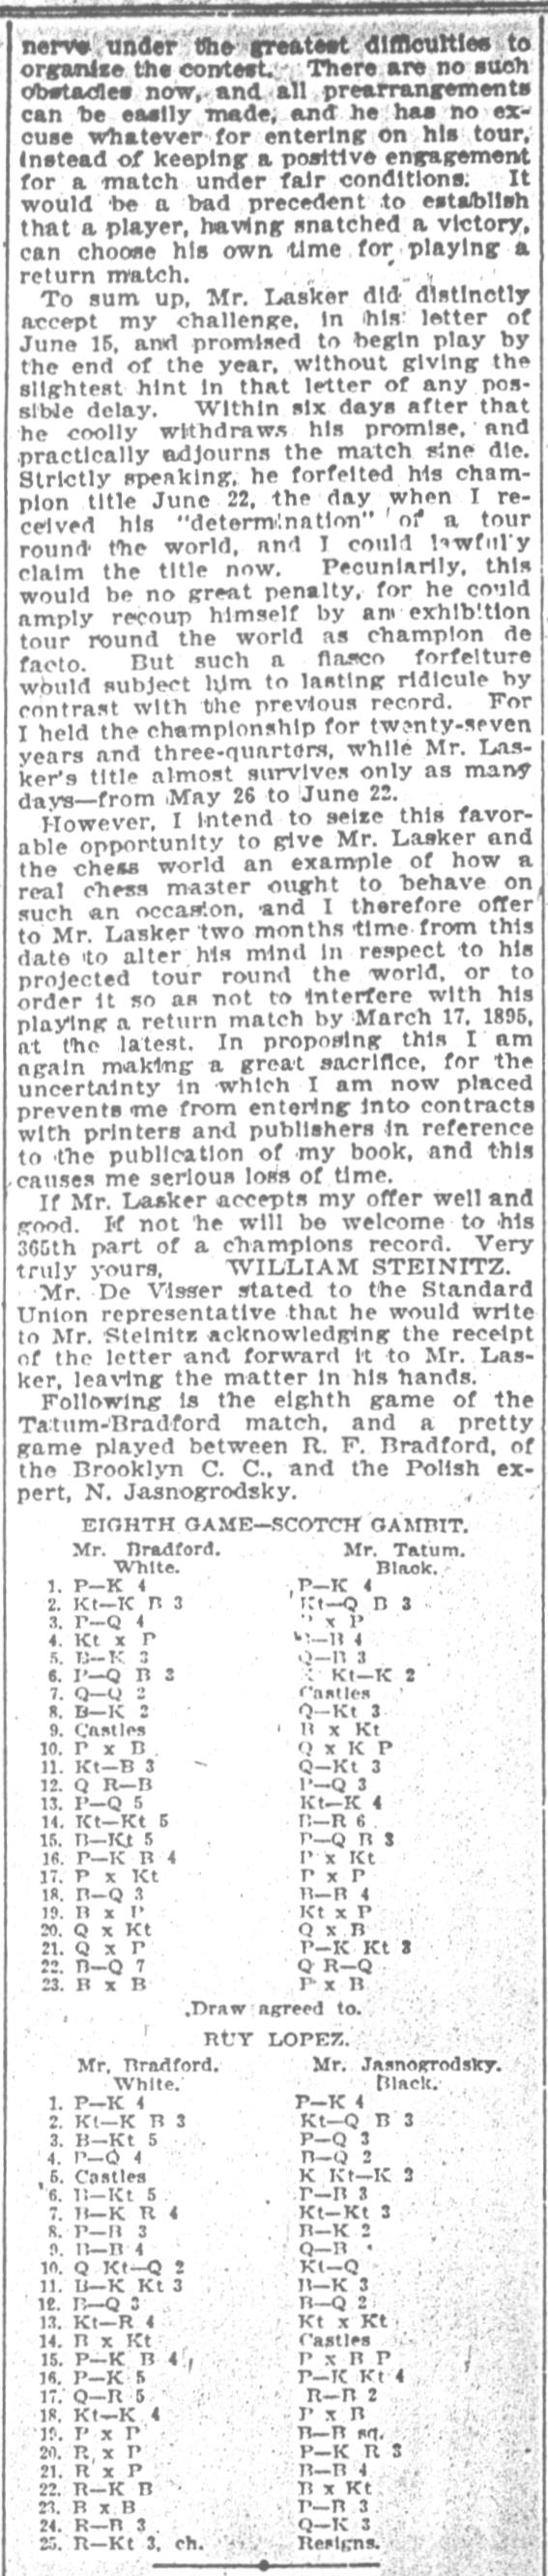 1894.08.13-03 Brooklyn Daily Standard-Union.jpg